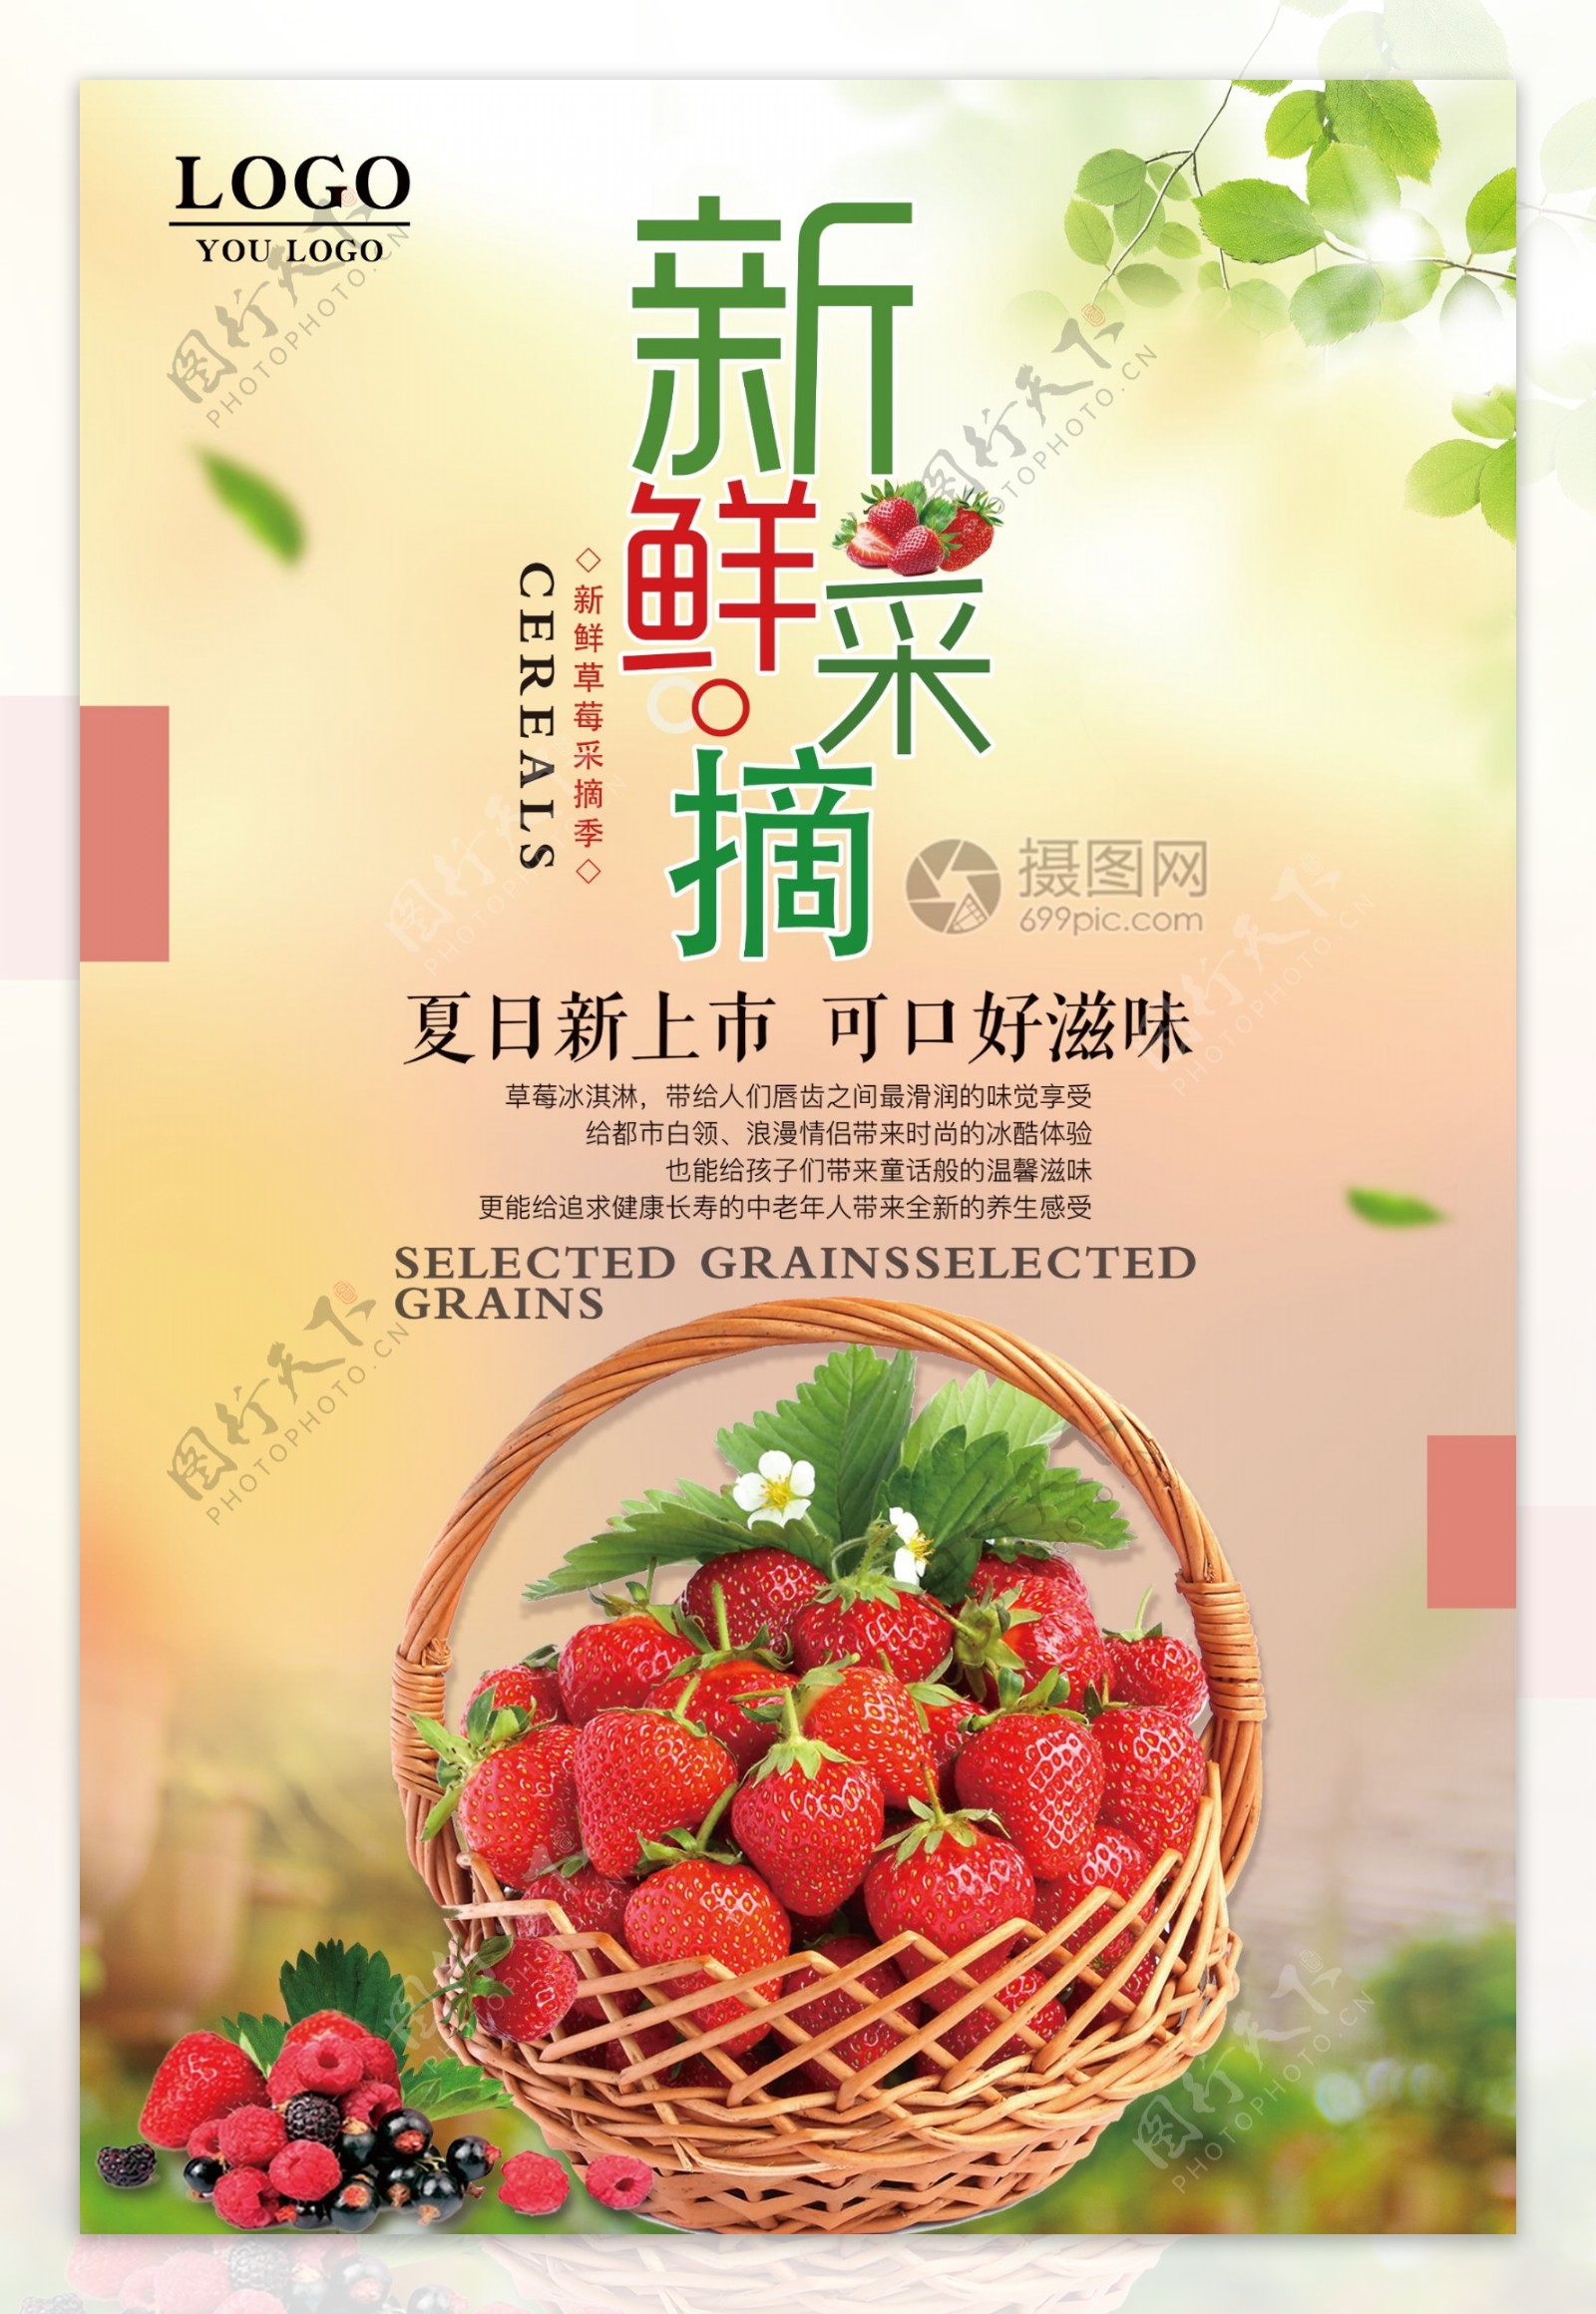 小清新蔬果草莓宣传海报